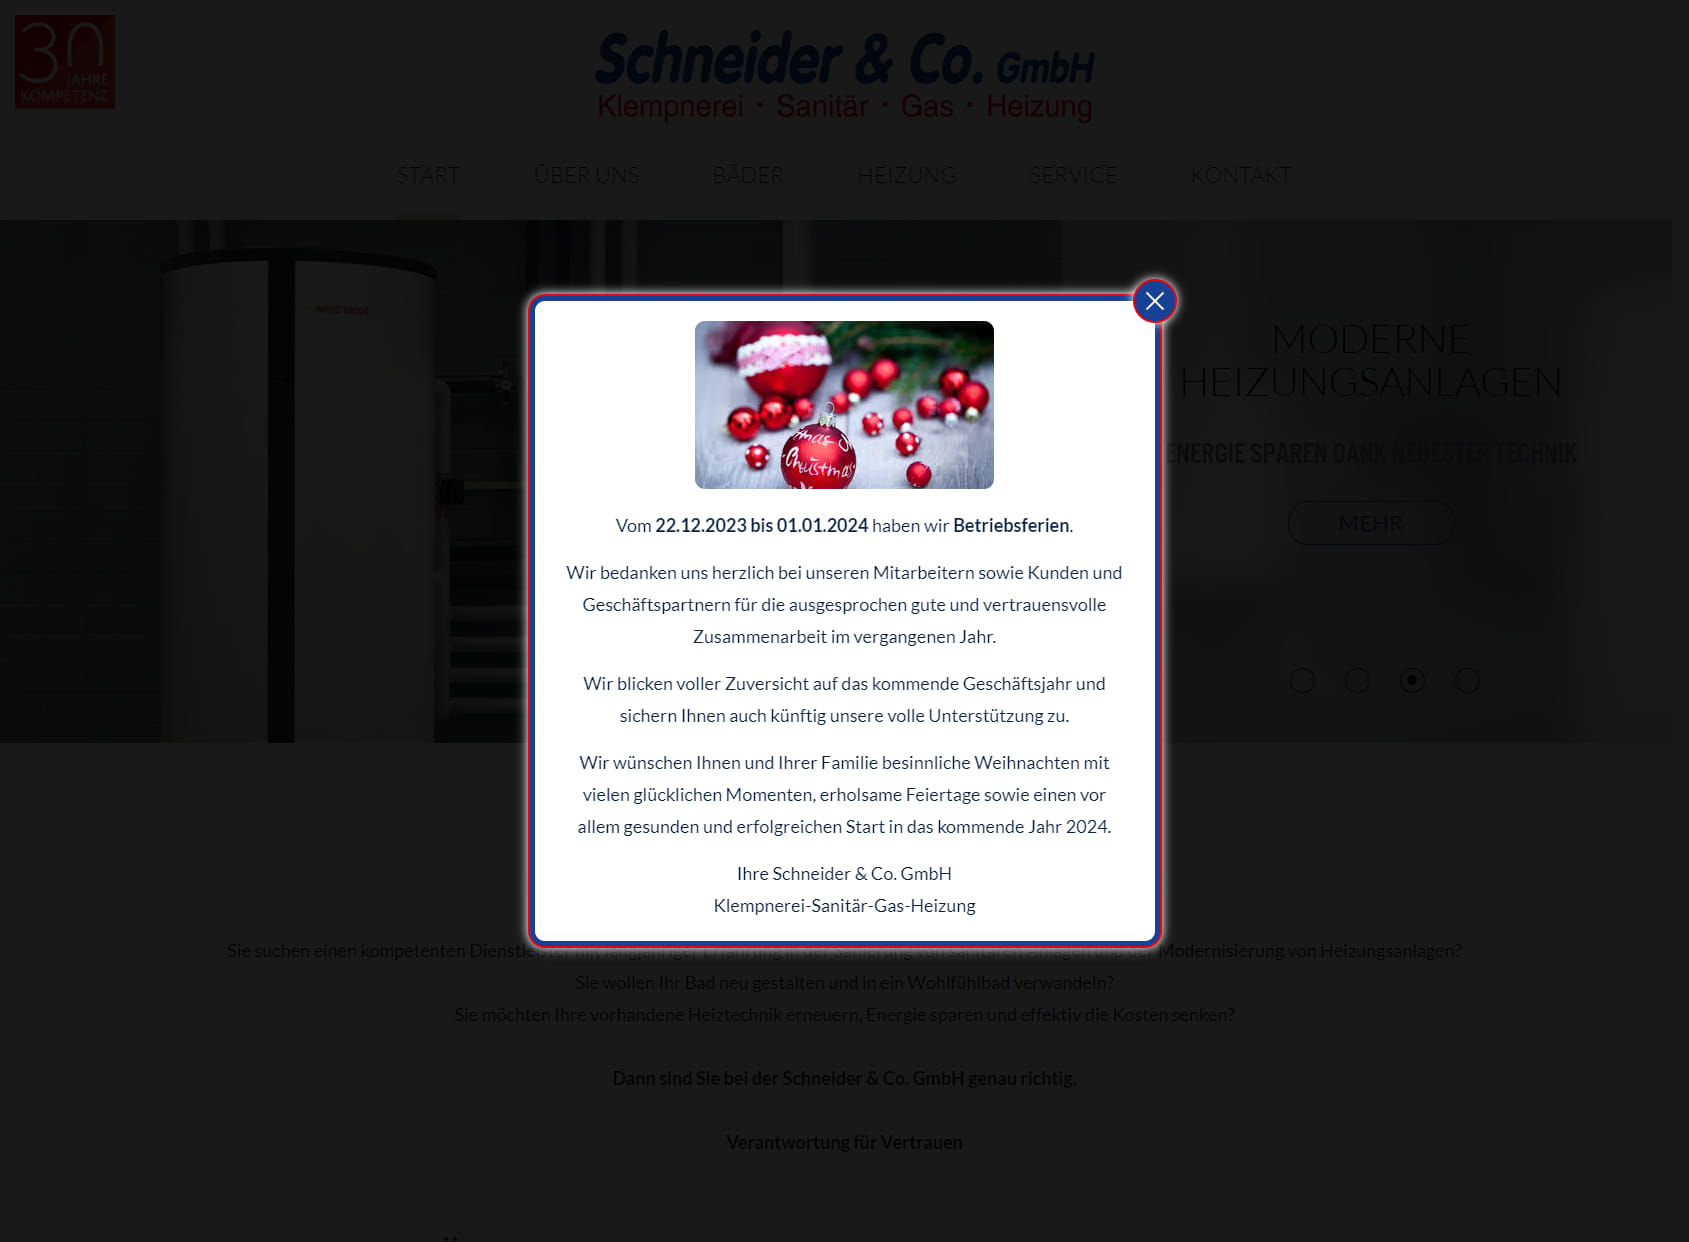 Schneider & Co. GmbH